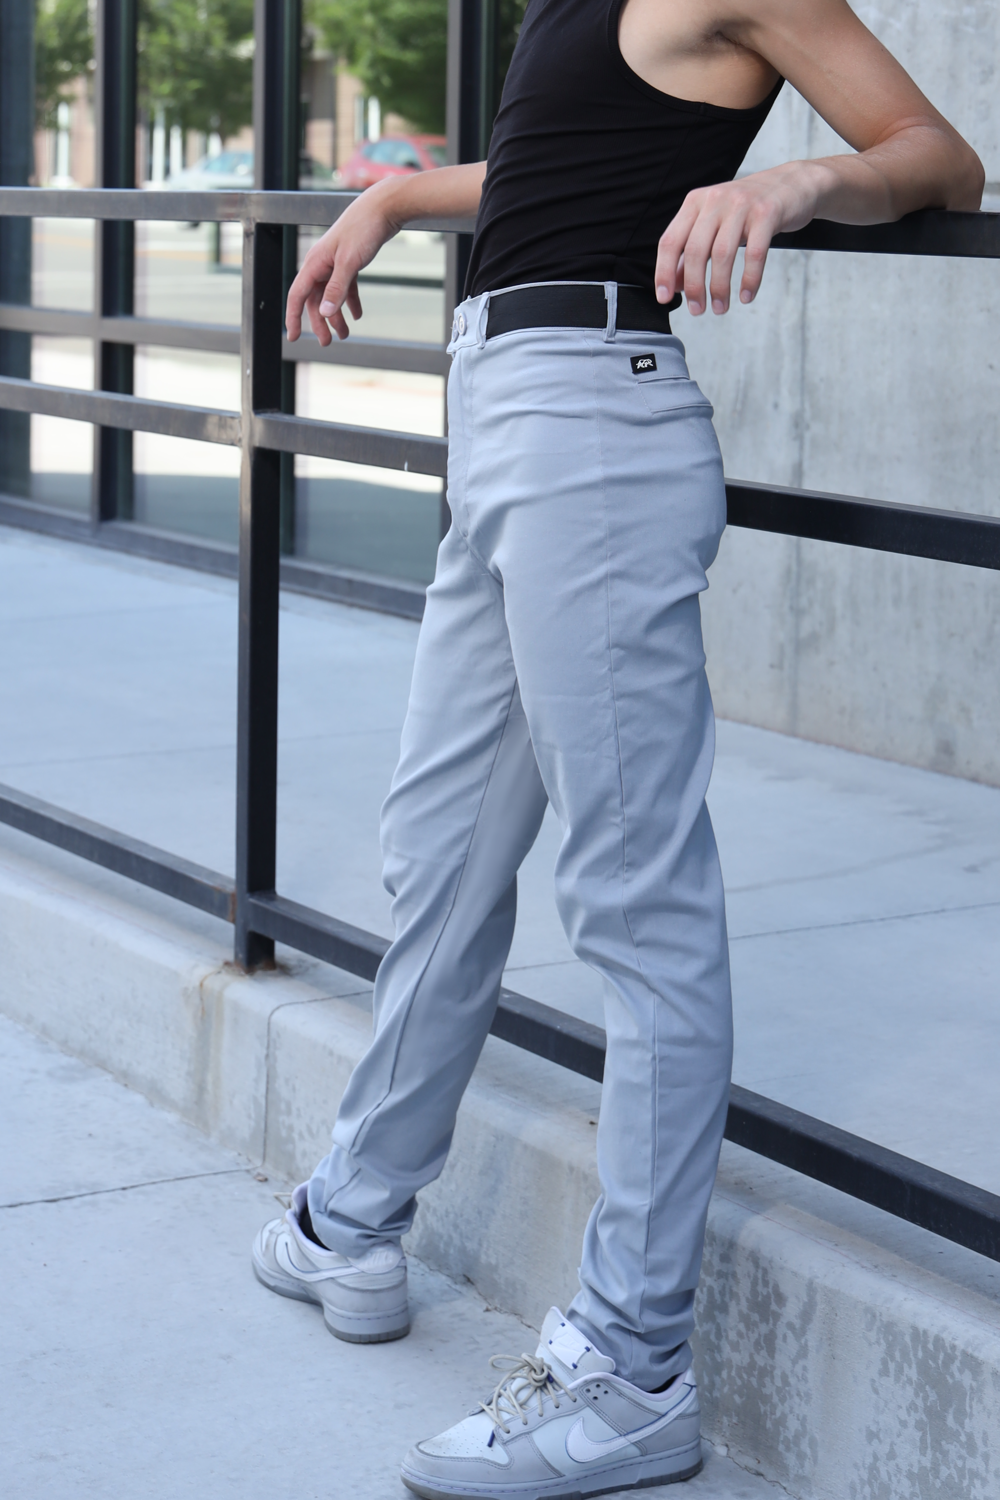 Stretch & Swayze Dance Trousers - Grey - FINAL SALE